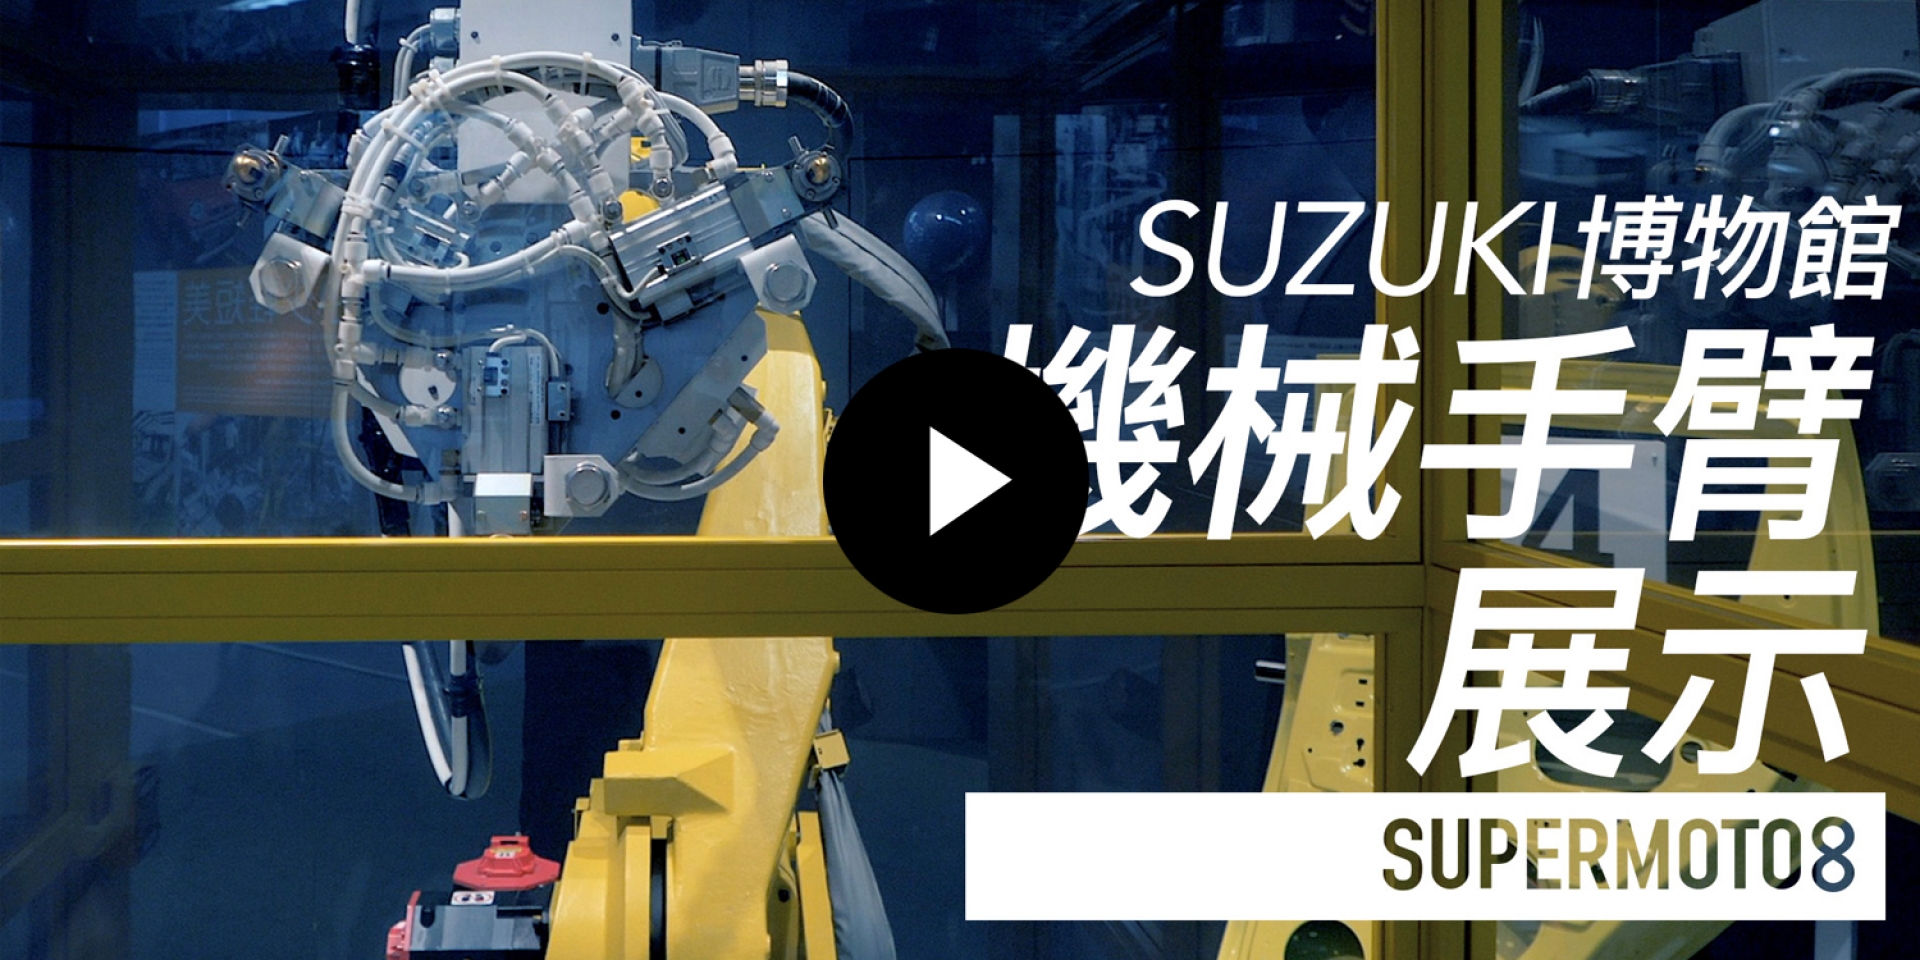 SUZUKI博物館。機械手臂展示